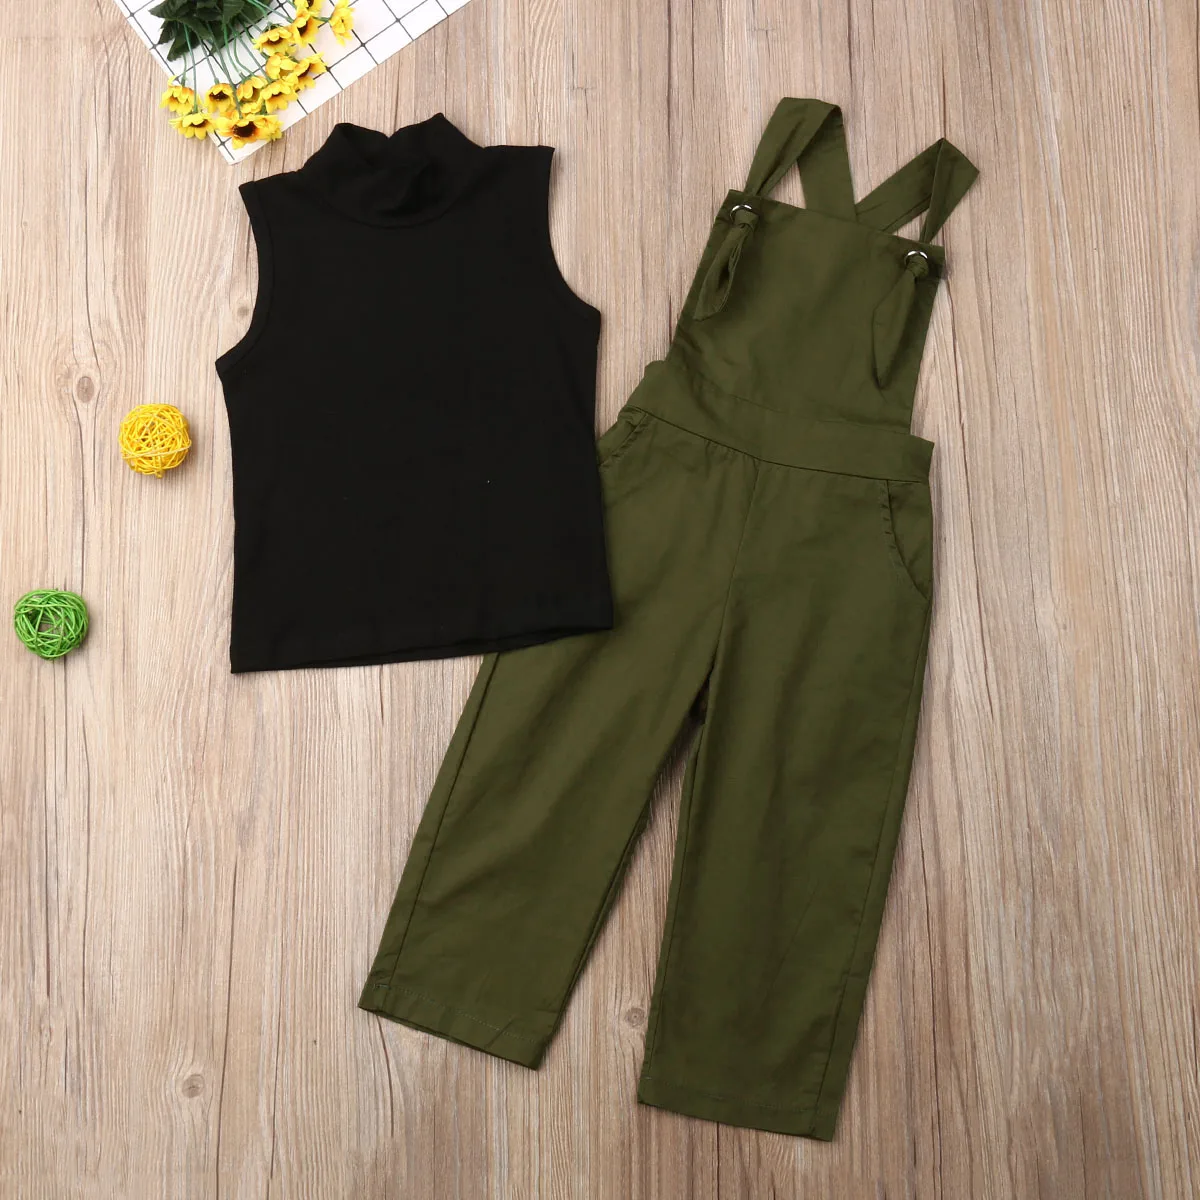 Shein детские комбинезоны для девочек ясельного возраста, Sleeveelss, тёмно-зелёный комбинезон, черный жилет, спадающий с плеча Топ, комбинезон, комплект одежды из 2 предметов